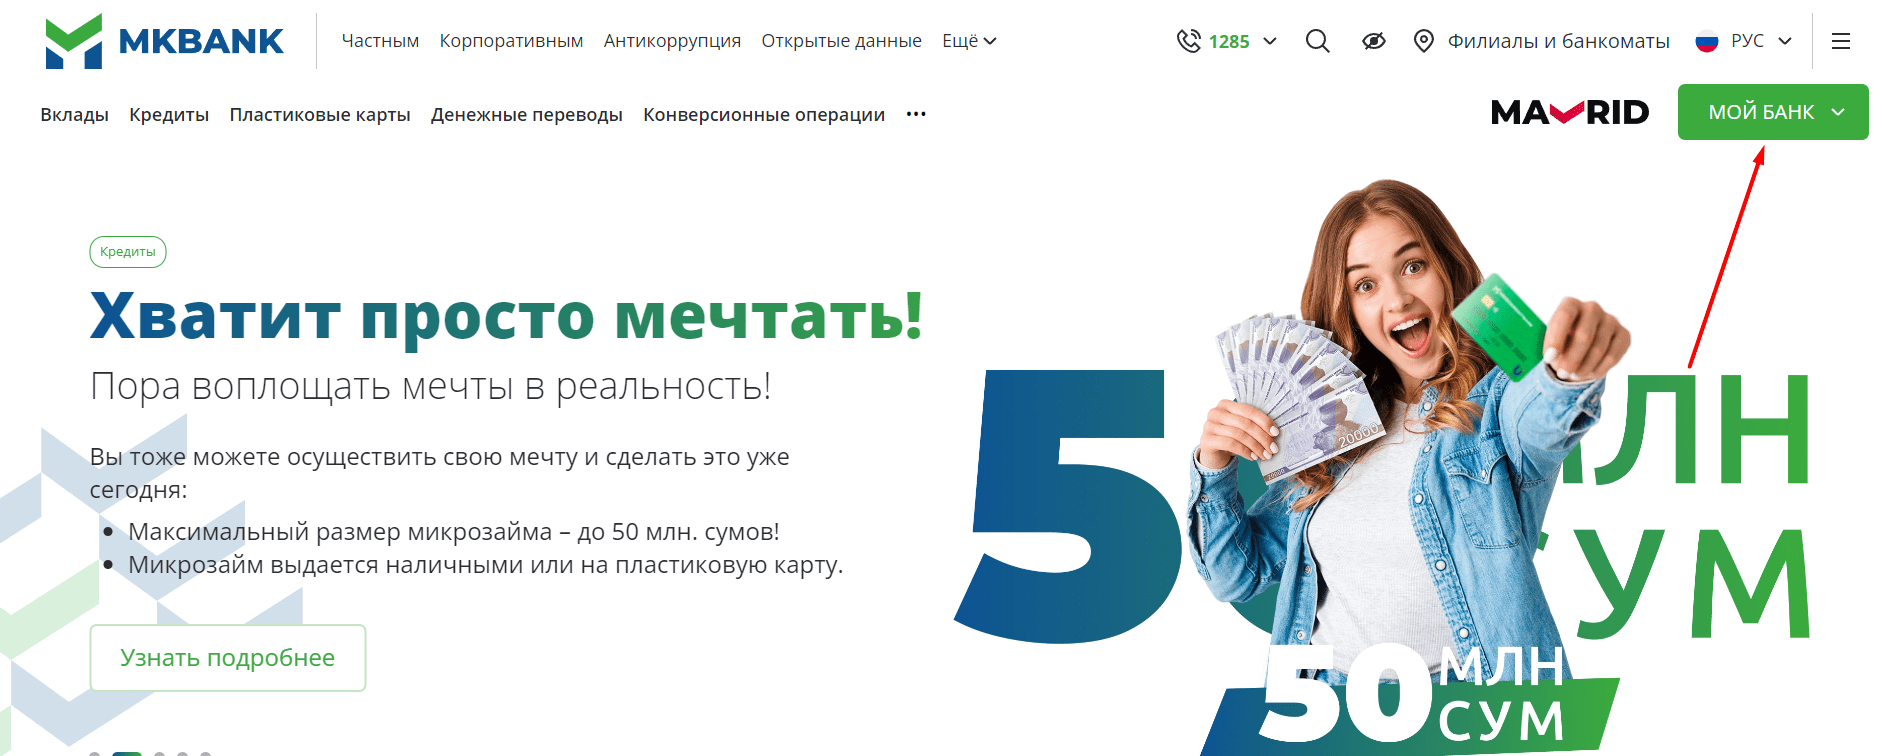 Микрокредитбанк (mkbank.uz)